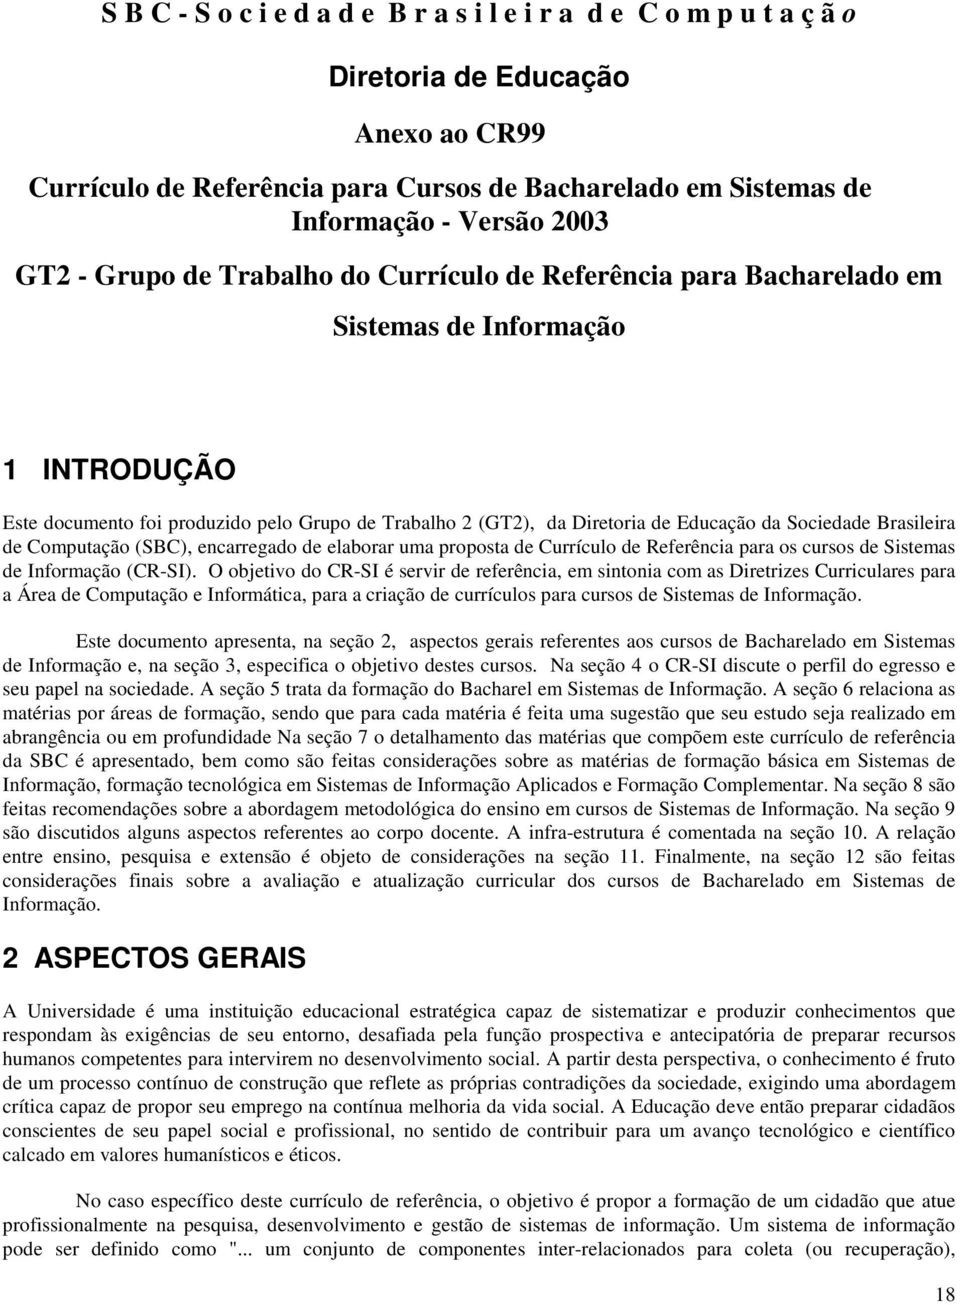 Sociedade Brasileira de Computação (SBC), encarregado de elaborar uma proposta de Currículo de Referência para os cursos de Sistemas de Informação (CR-SI).